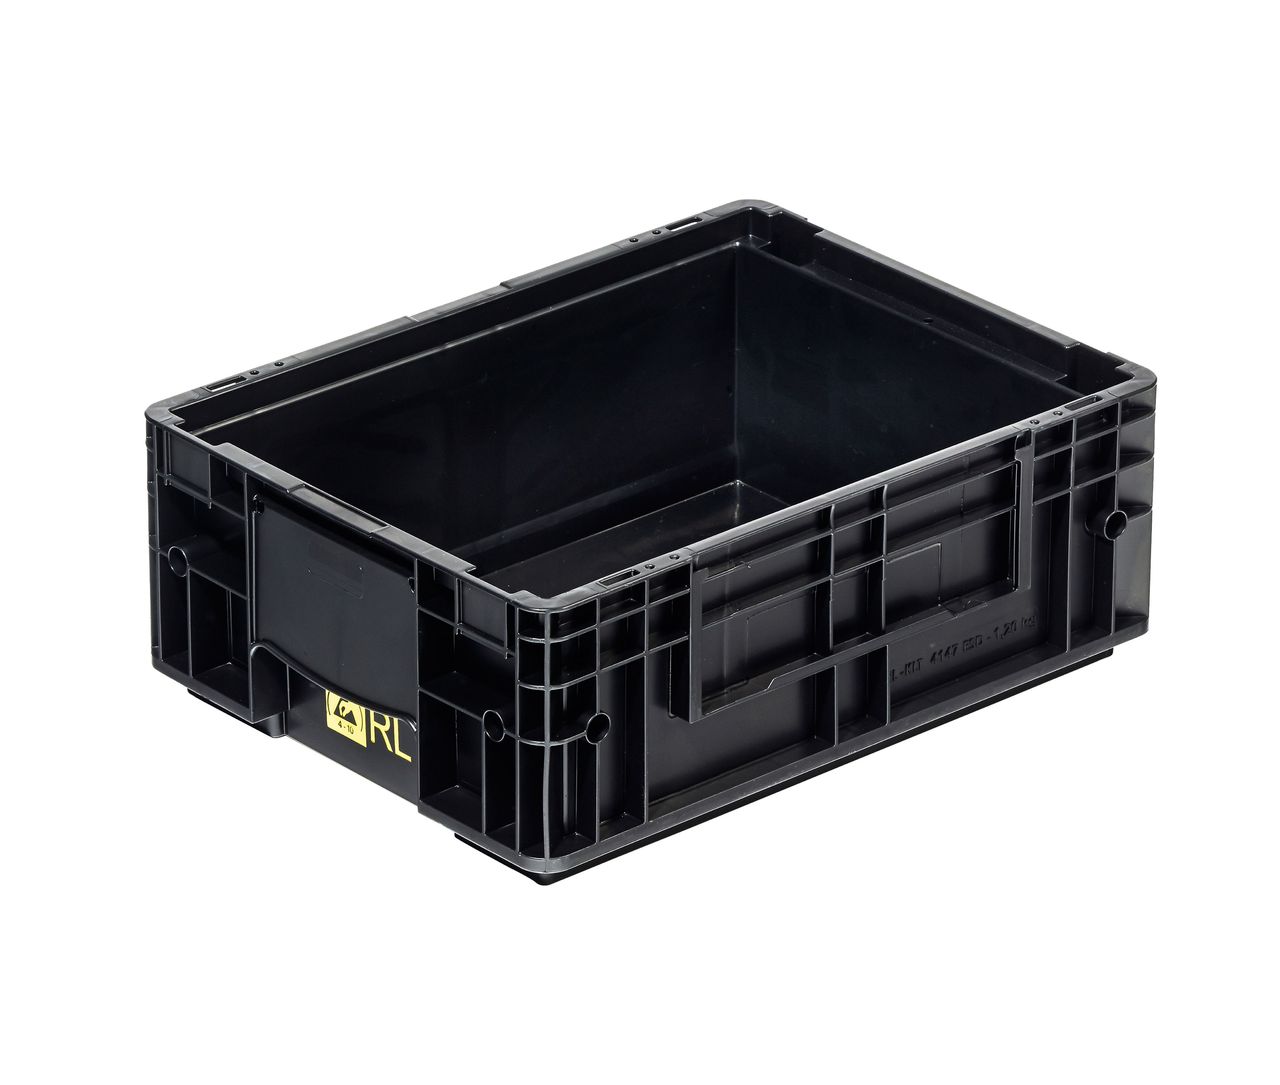 ESD-Behälter VDA-RL-KLT 
400 x 300 x 147 mm - VDA-RL-KLT 4047 ESD Farbe: schwarz